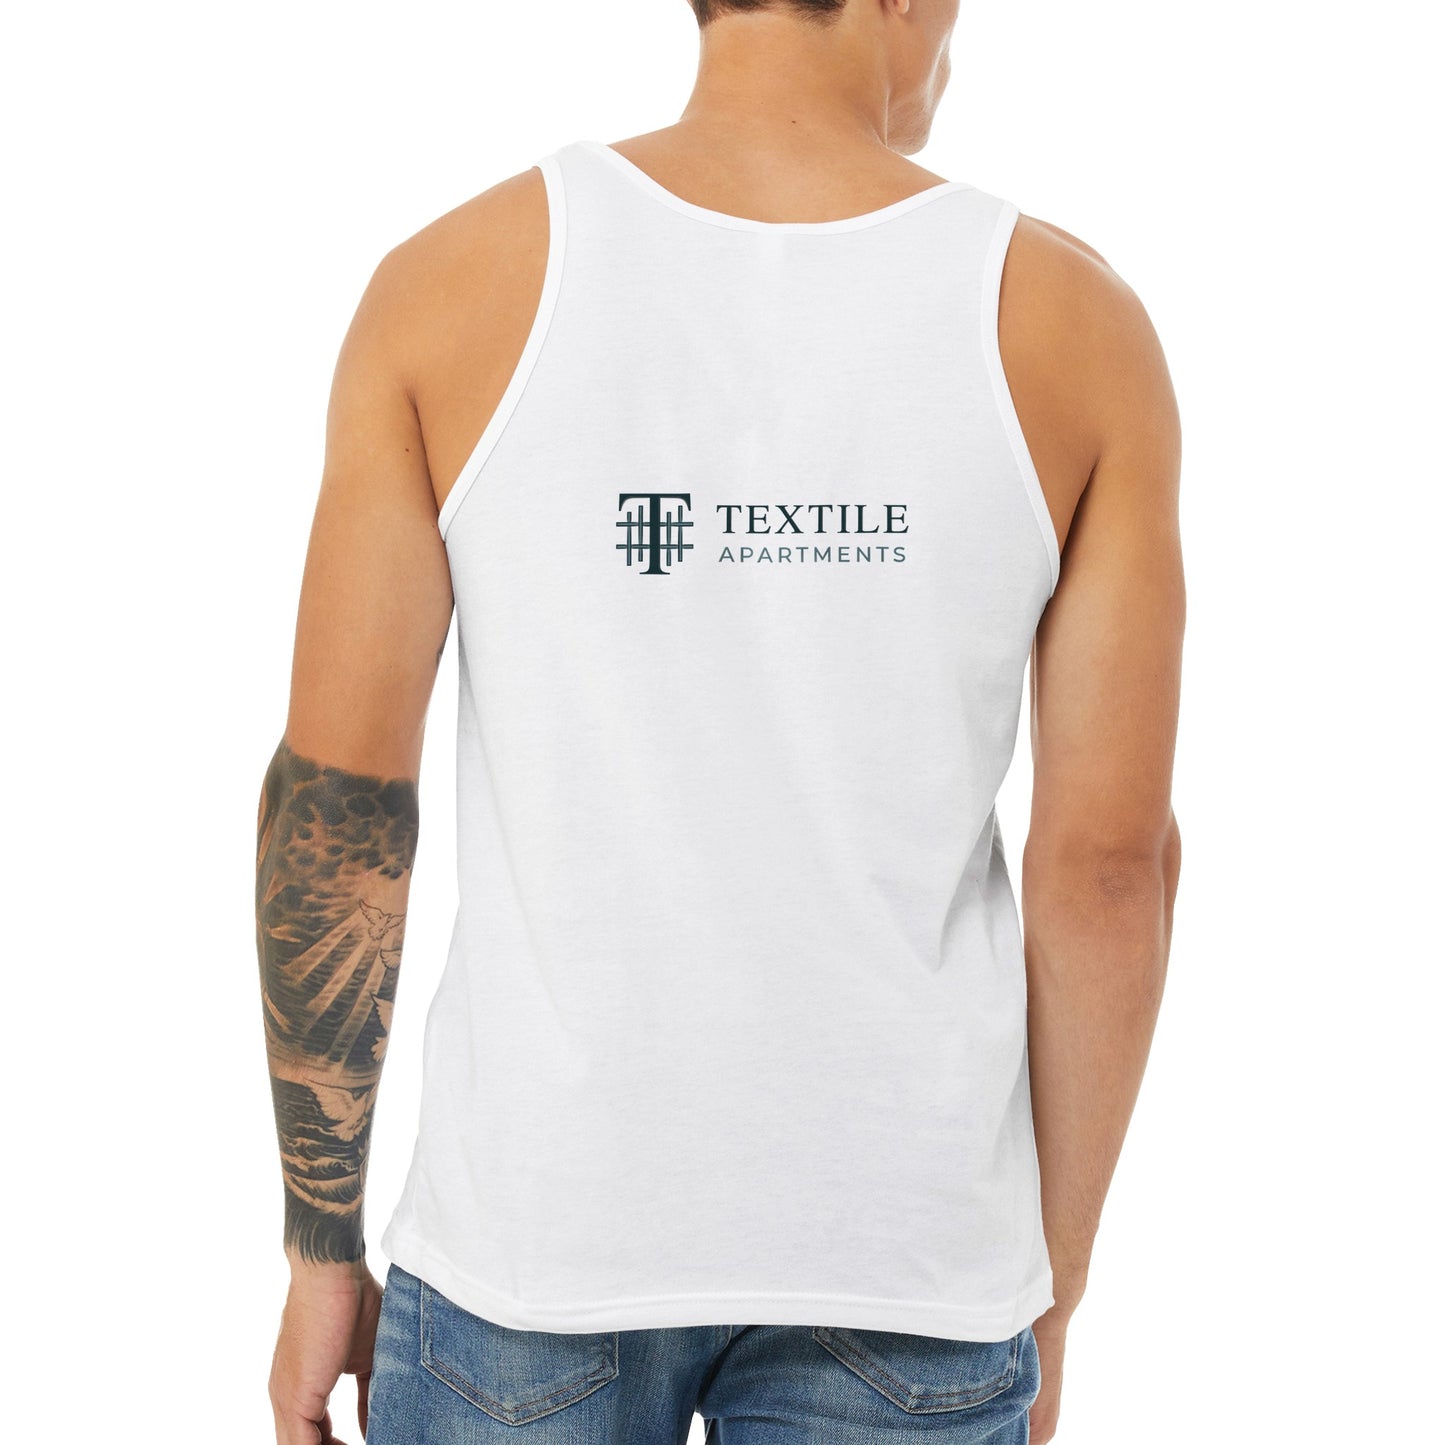 Textile Apartments - Premium Unisex Tank Top